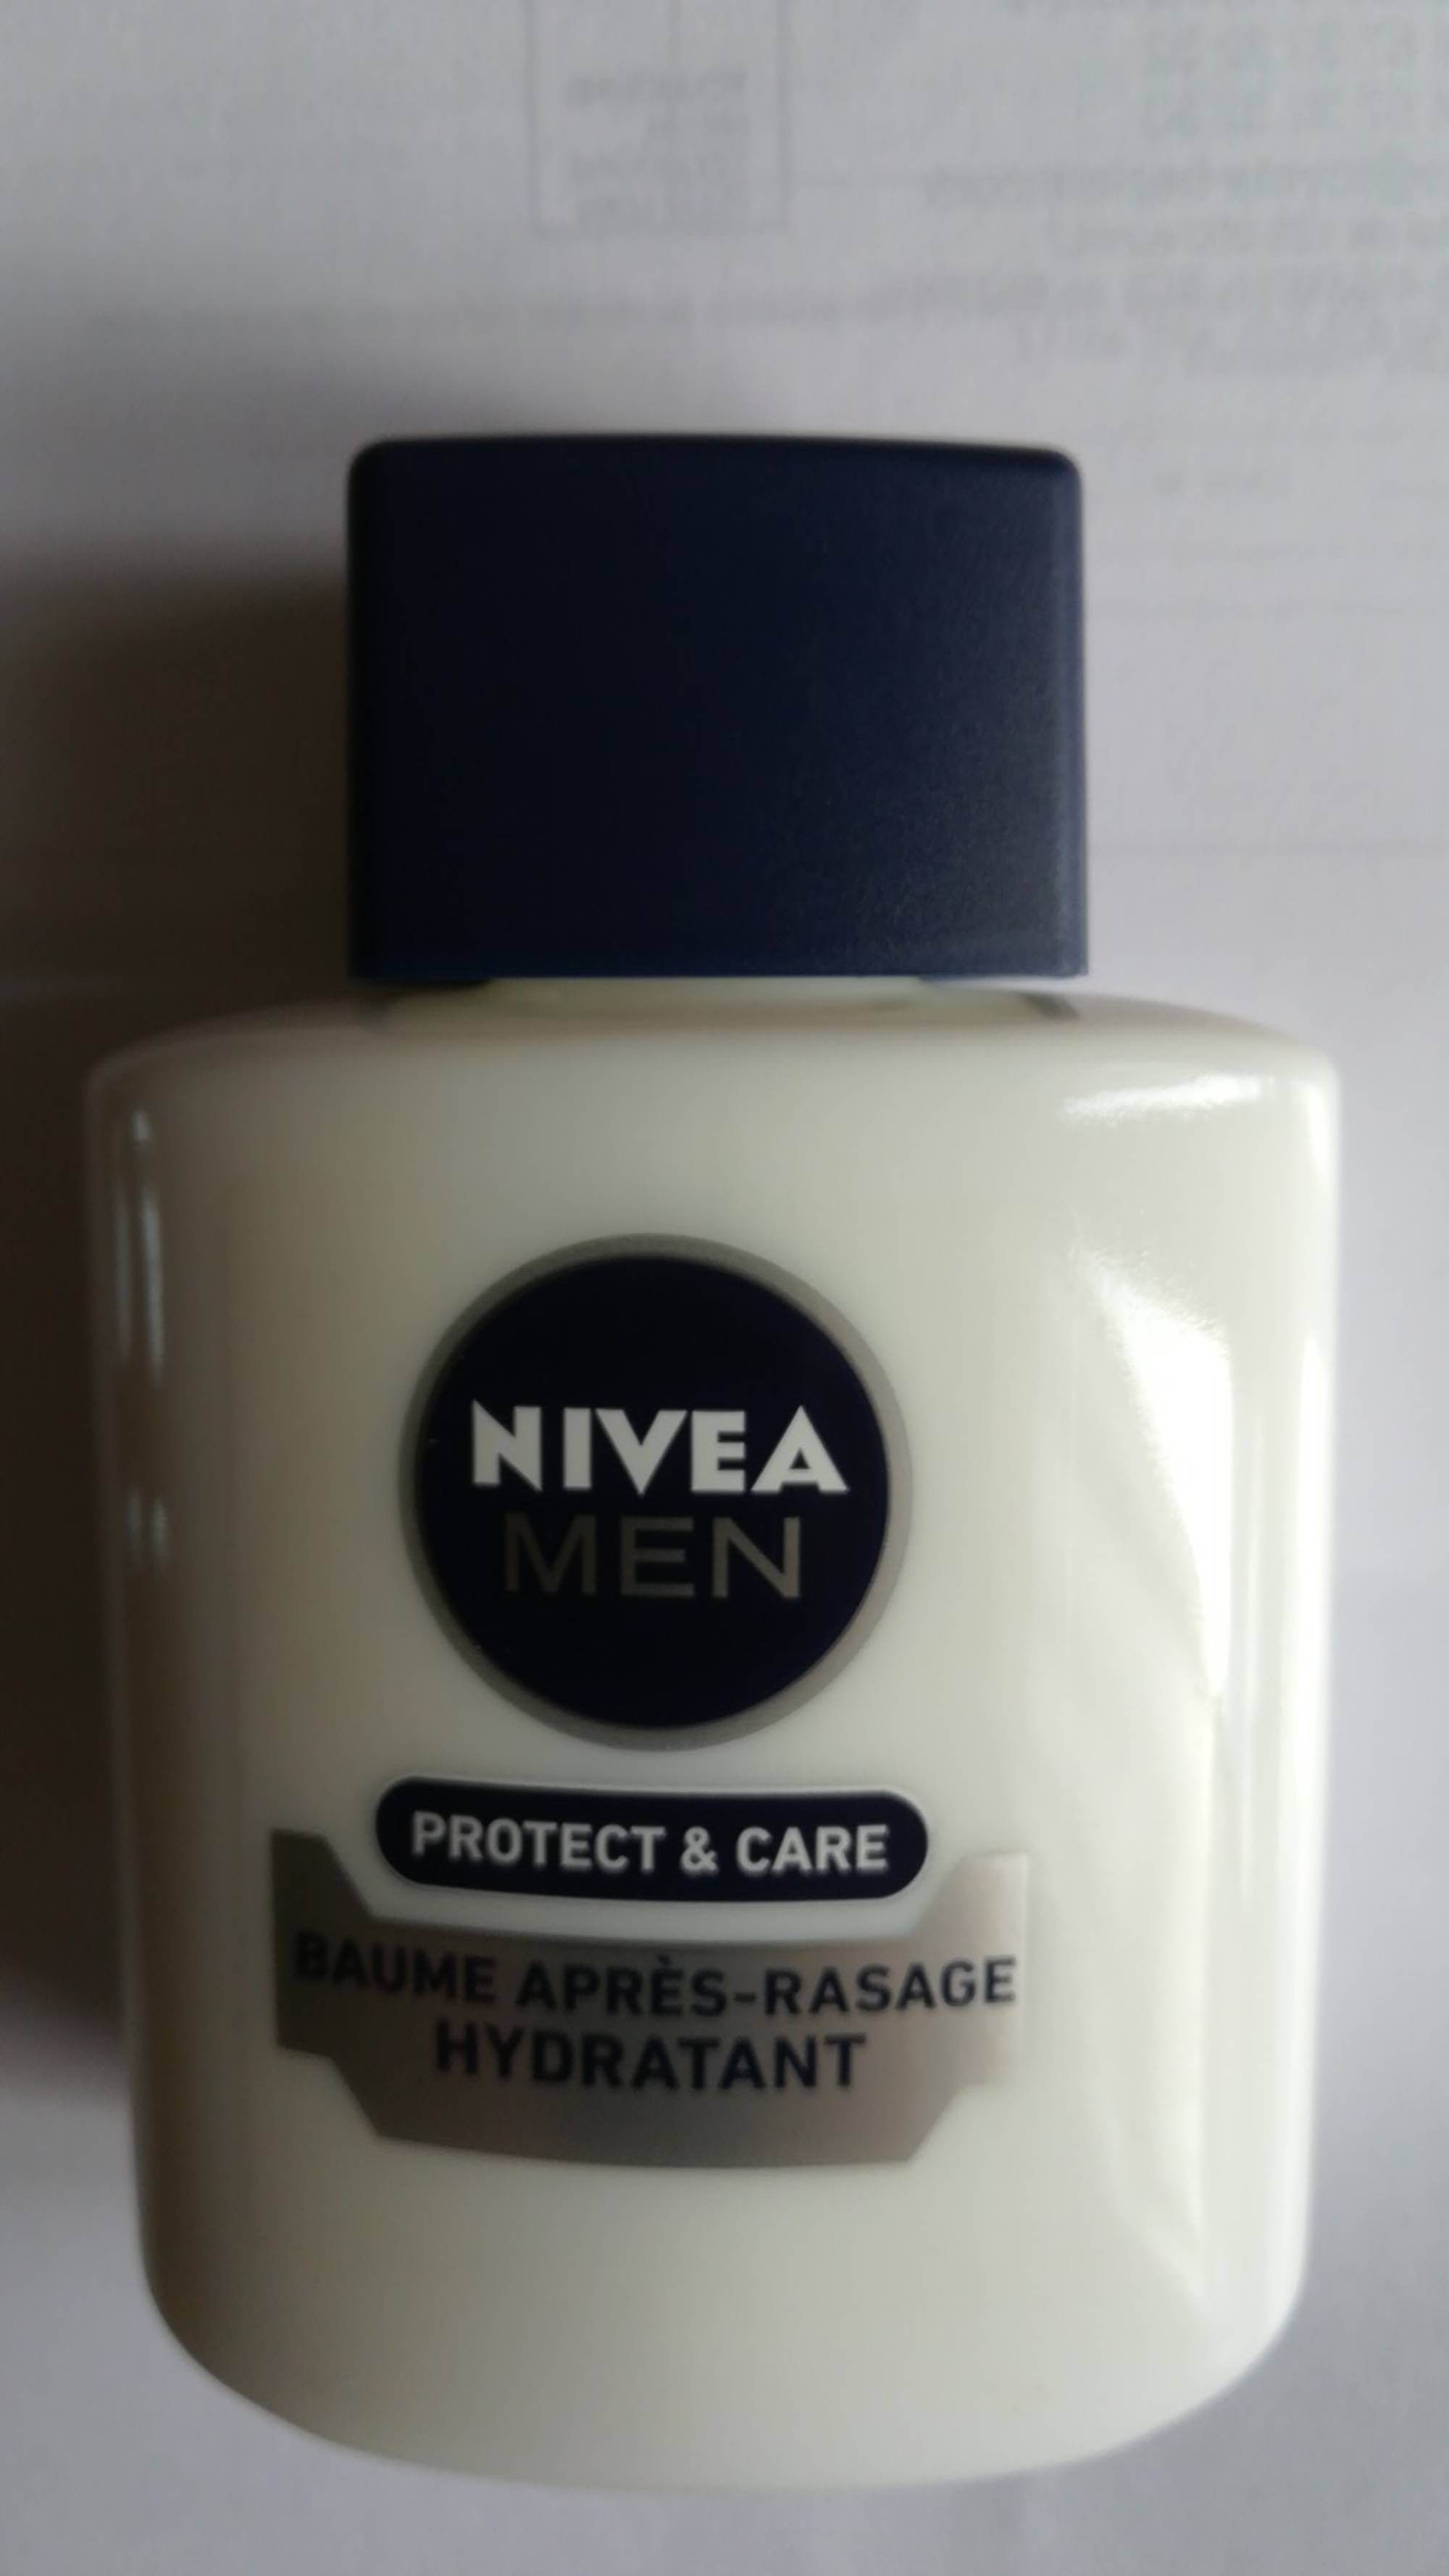 NIVEA MEN - Protect & care - Baume après-rasage hydratant